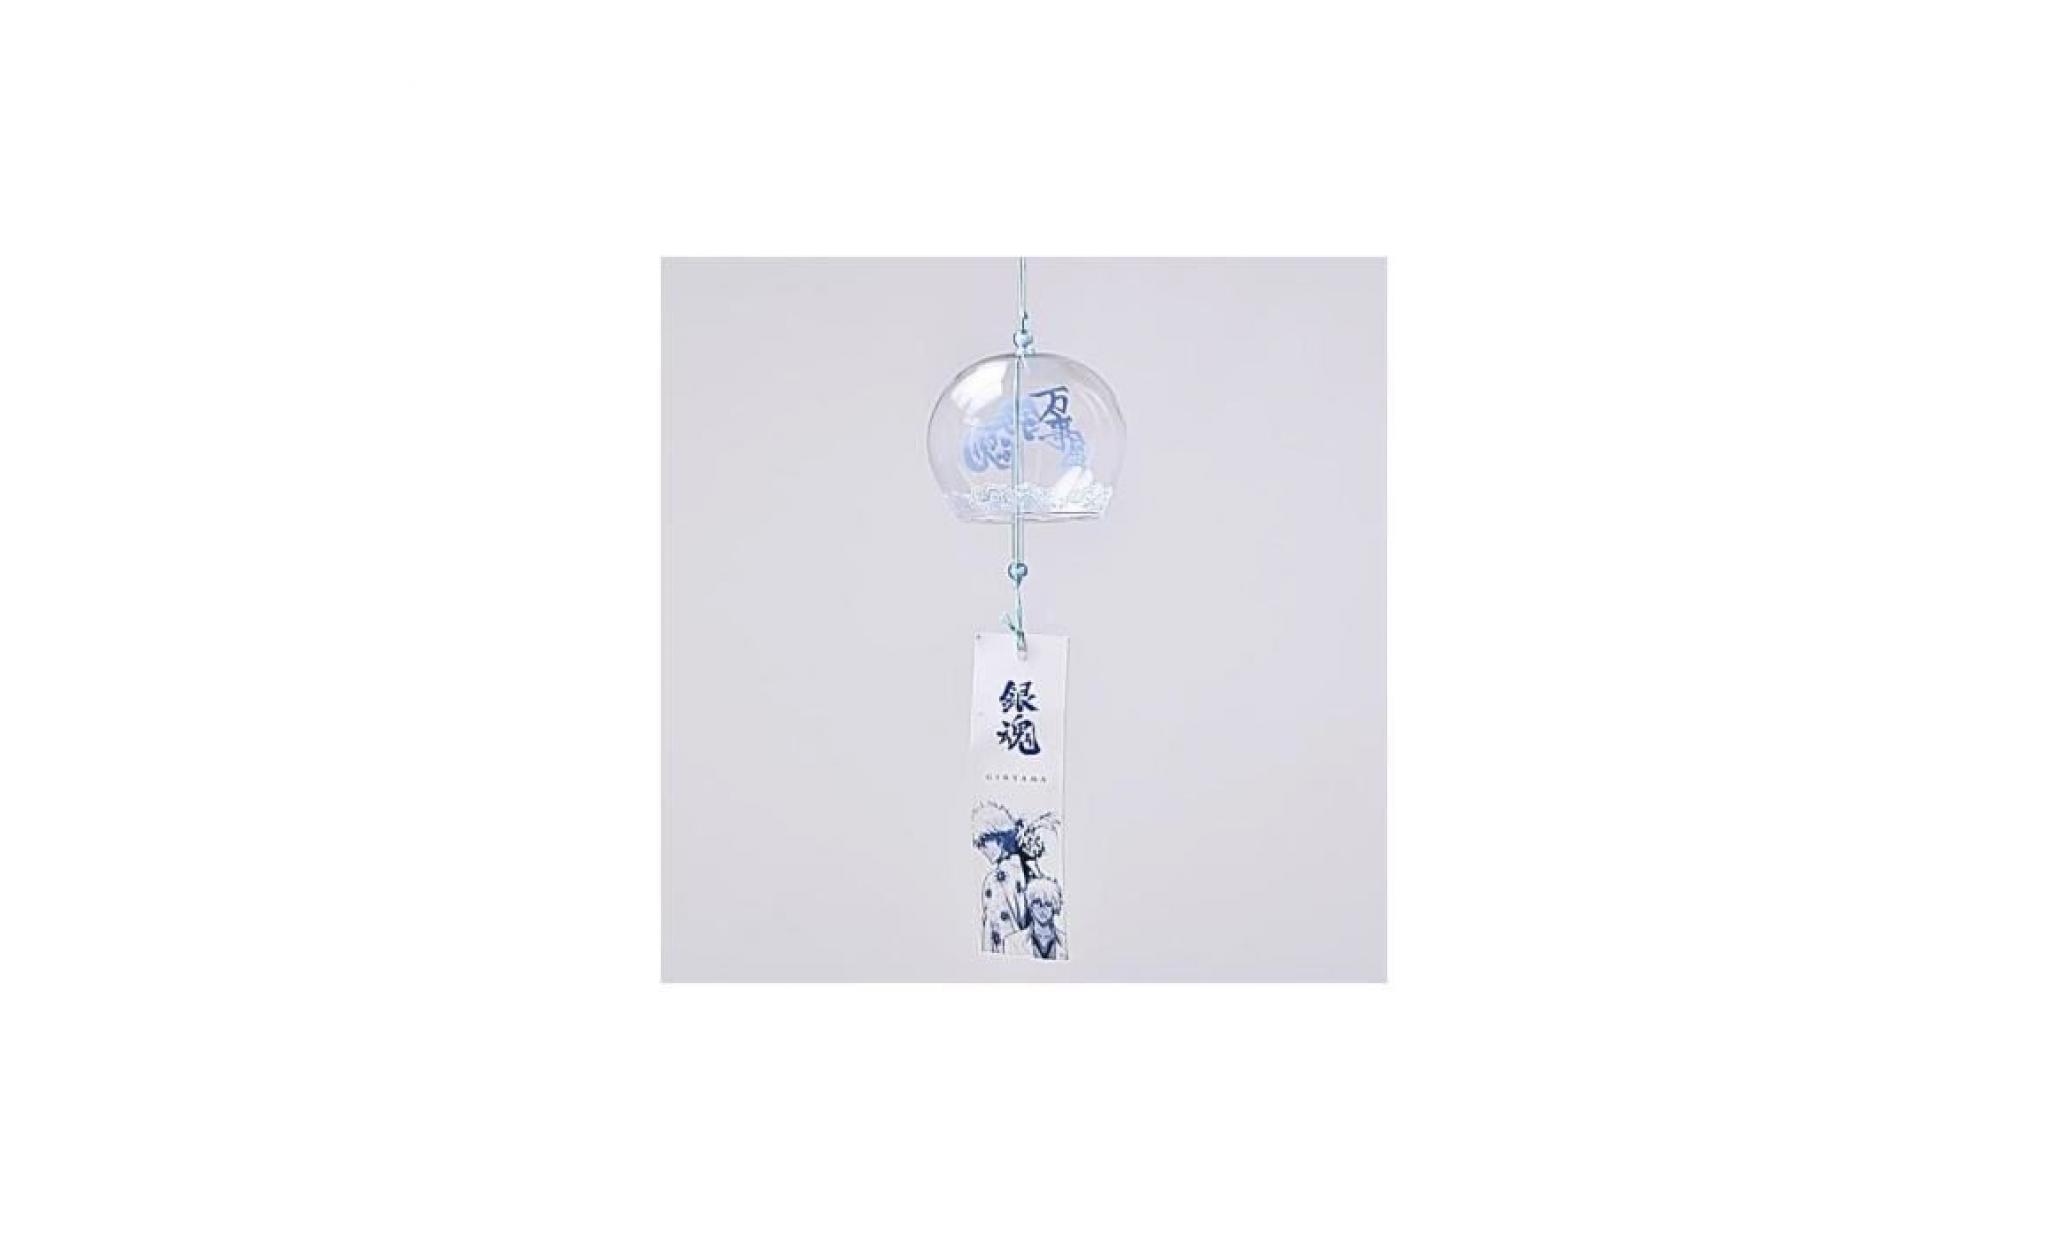 carillon brise en verre carillon de style japenese maison jardin suspendu décoration cadeau bricolage # 2 pas cher